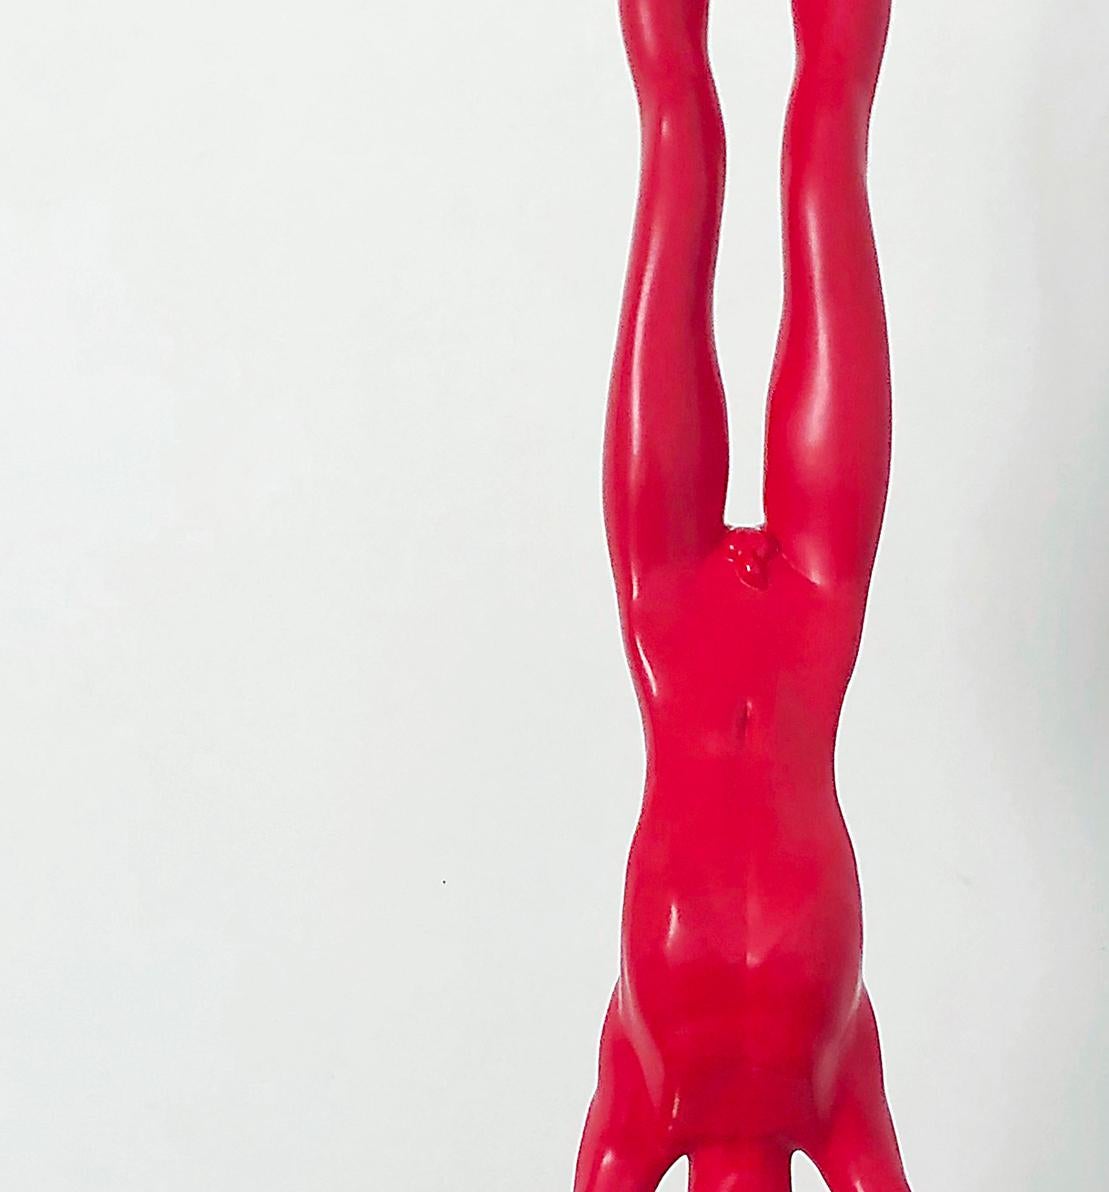 handstand sculpture